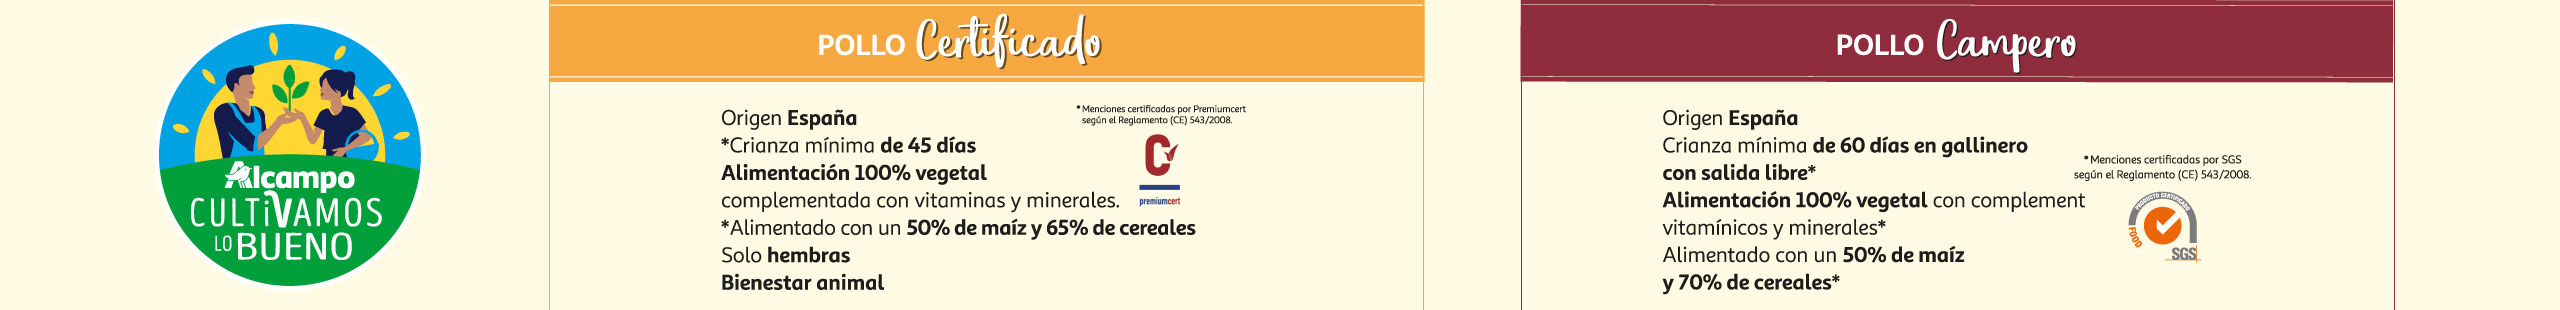 POLLOS APC (Pollos campero y certificado)